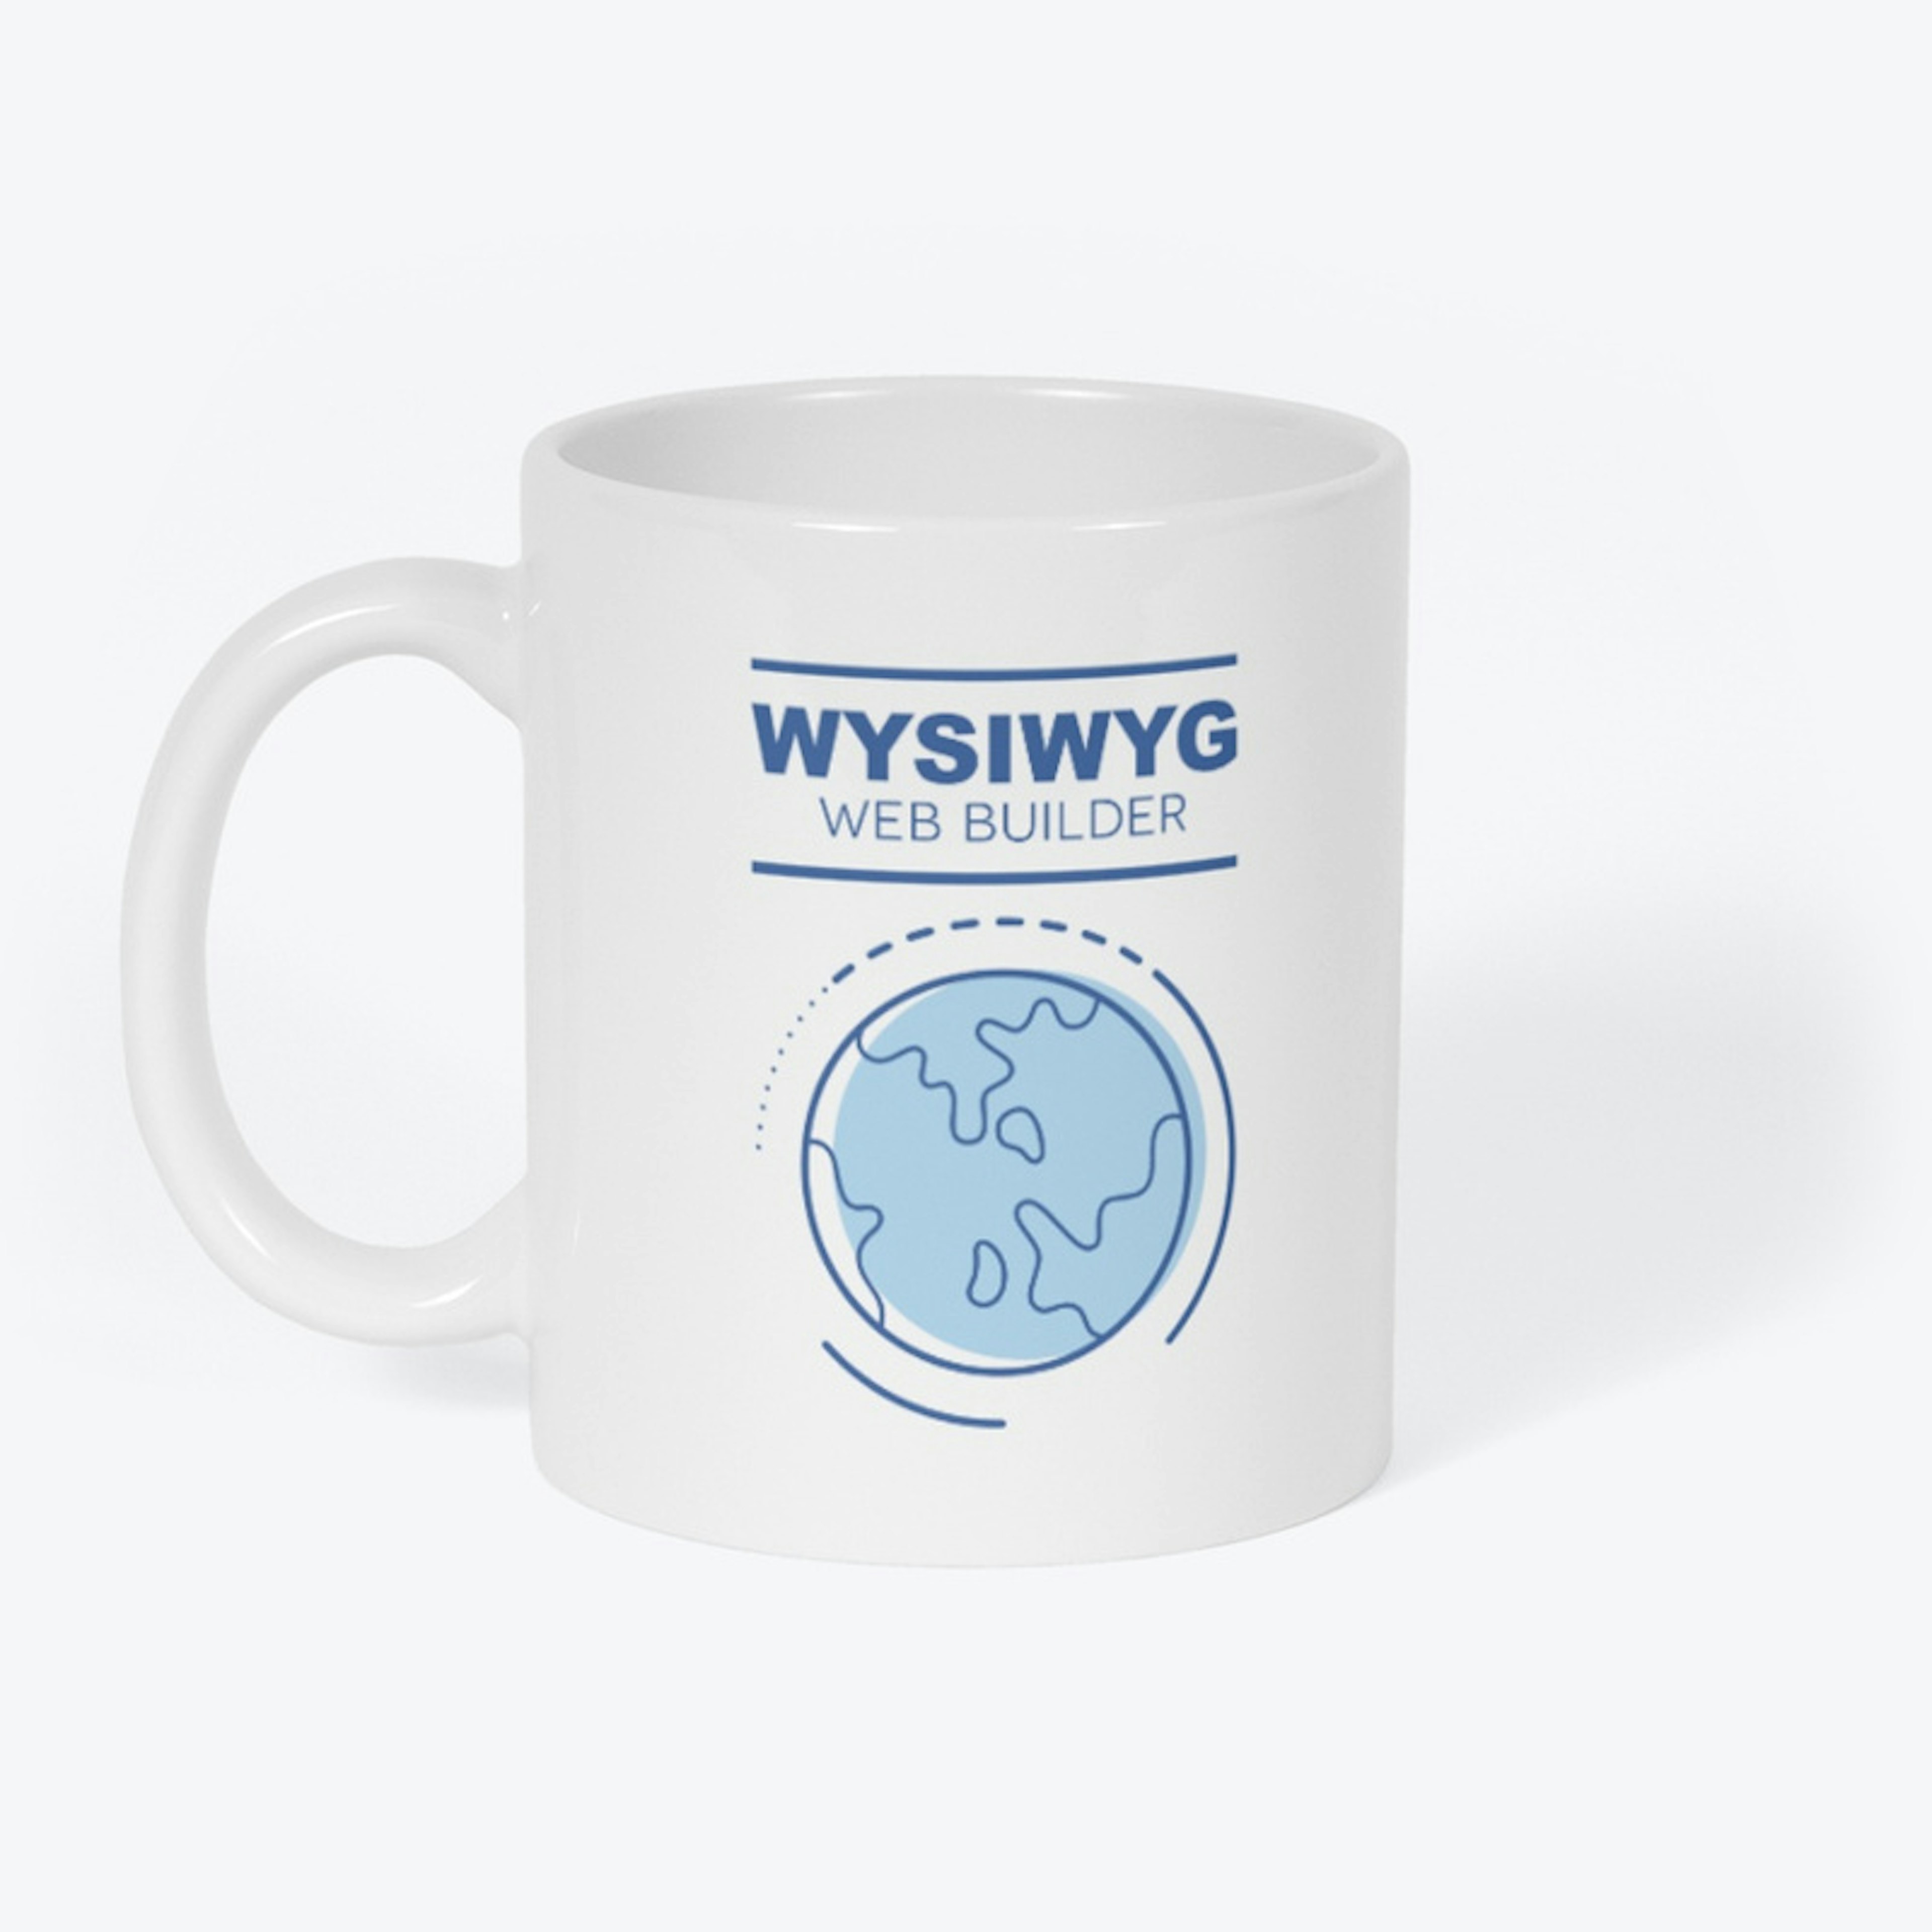 WYSIWYG Web Builder Mug